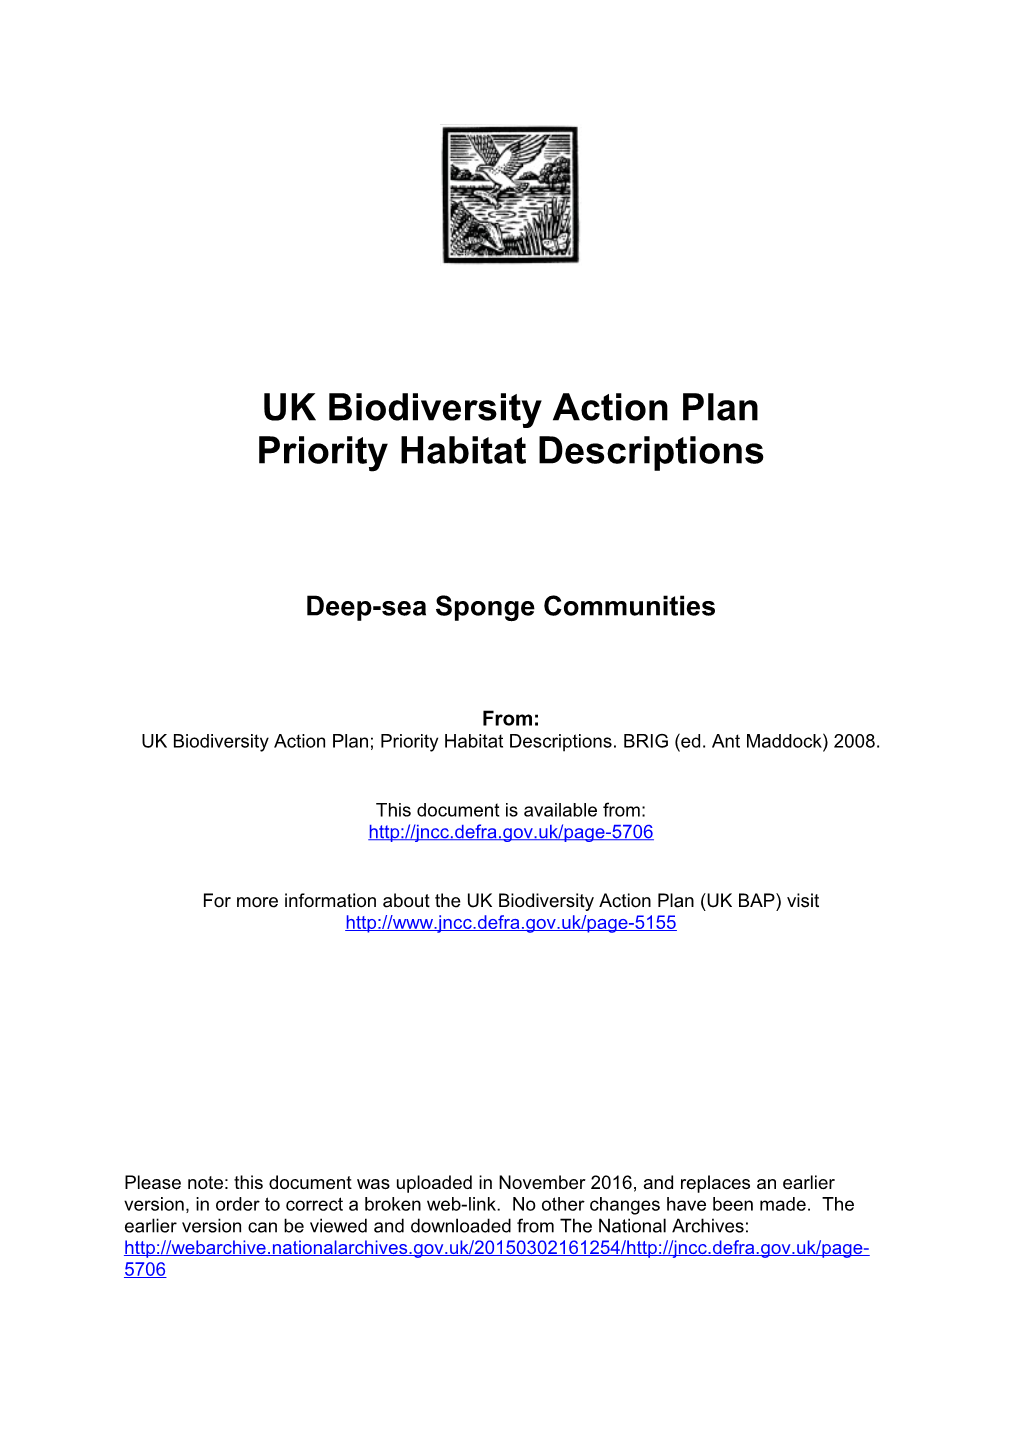 UK Biodiversity Action Plan s3